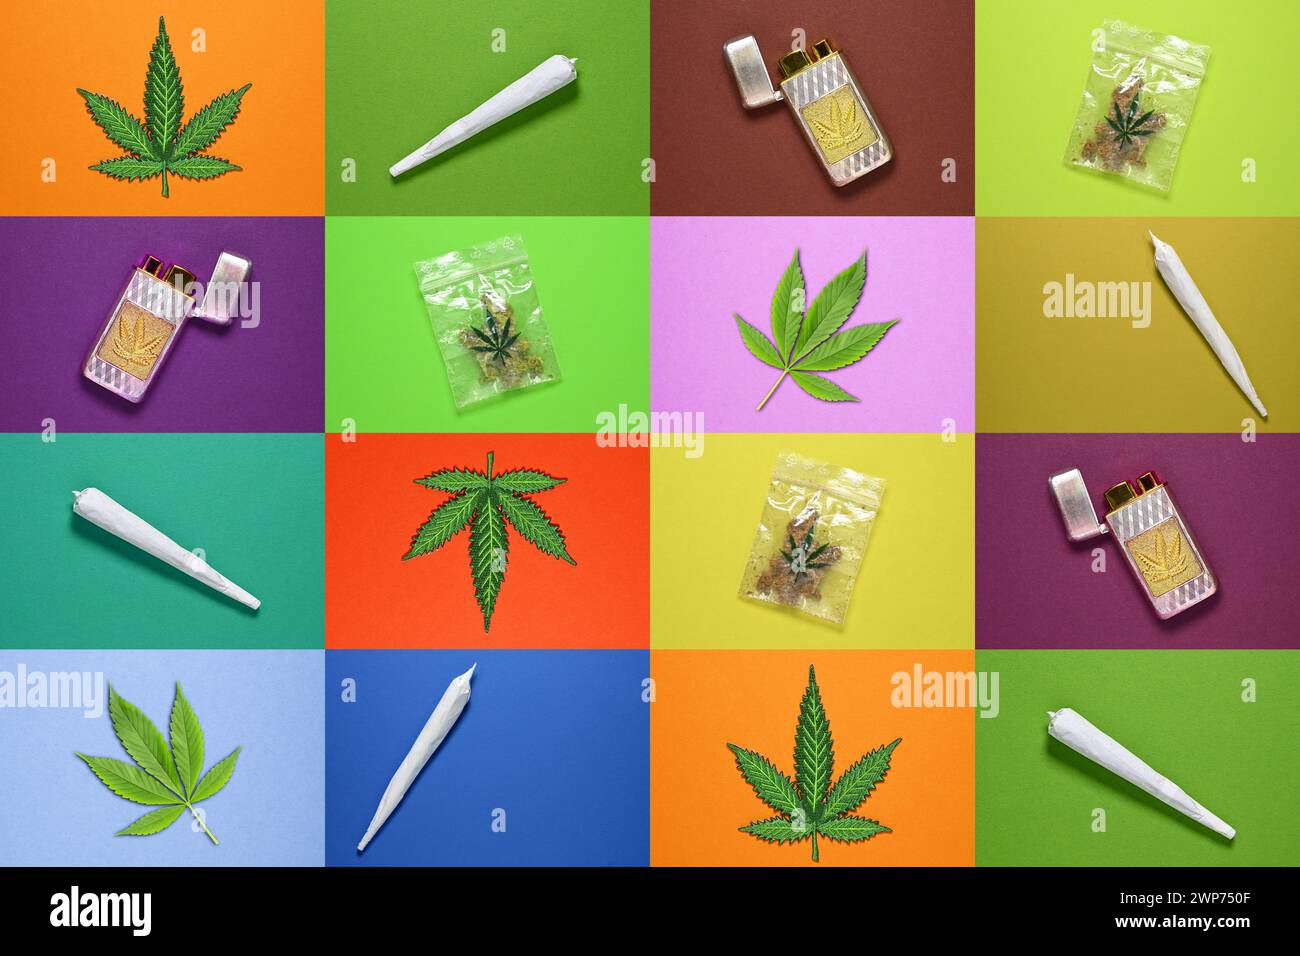 FOTOMONTAGE, Collage von Hanfblatt, Joint, Feuerzeug und Cannabis-Tütchen Foto Stock